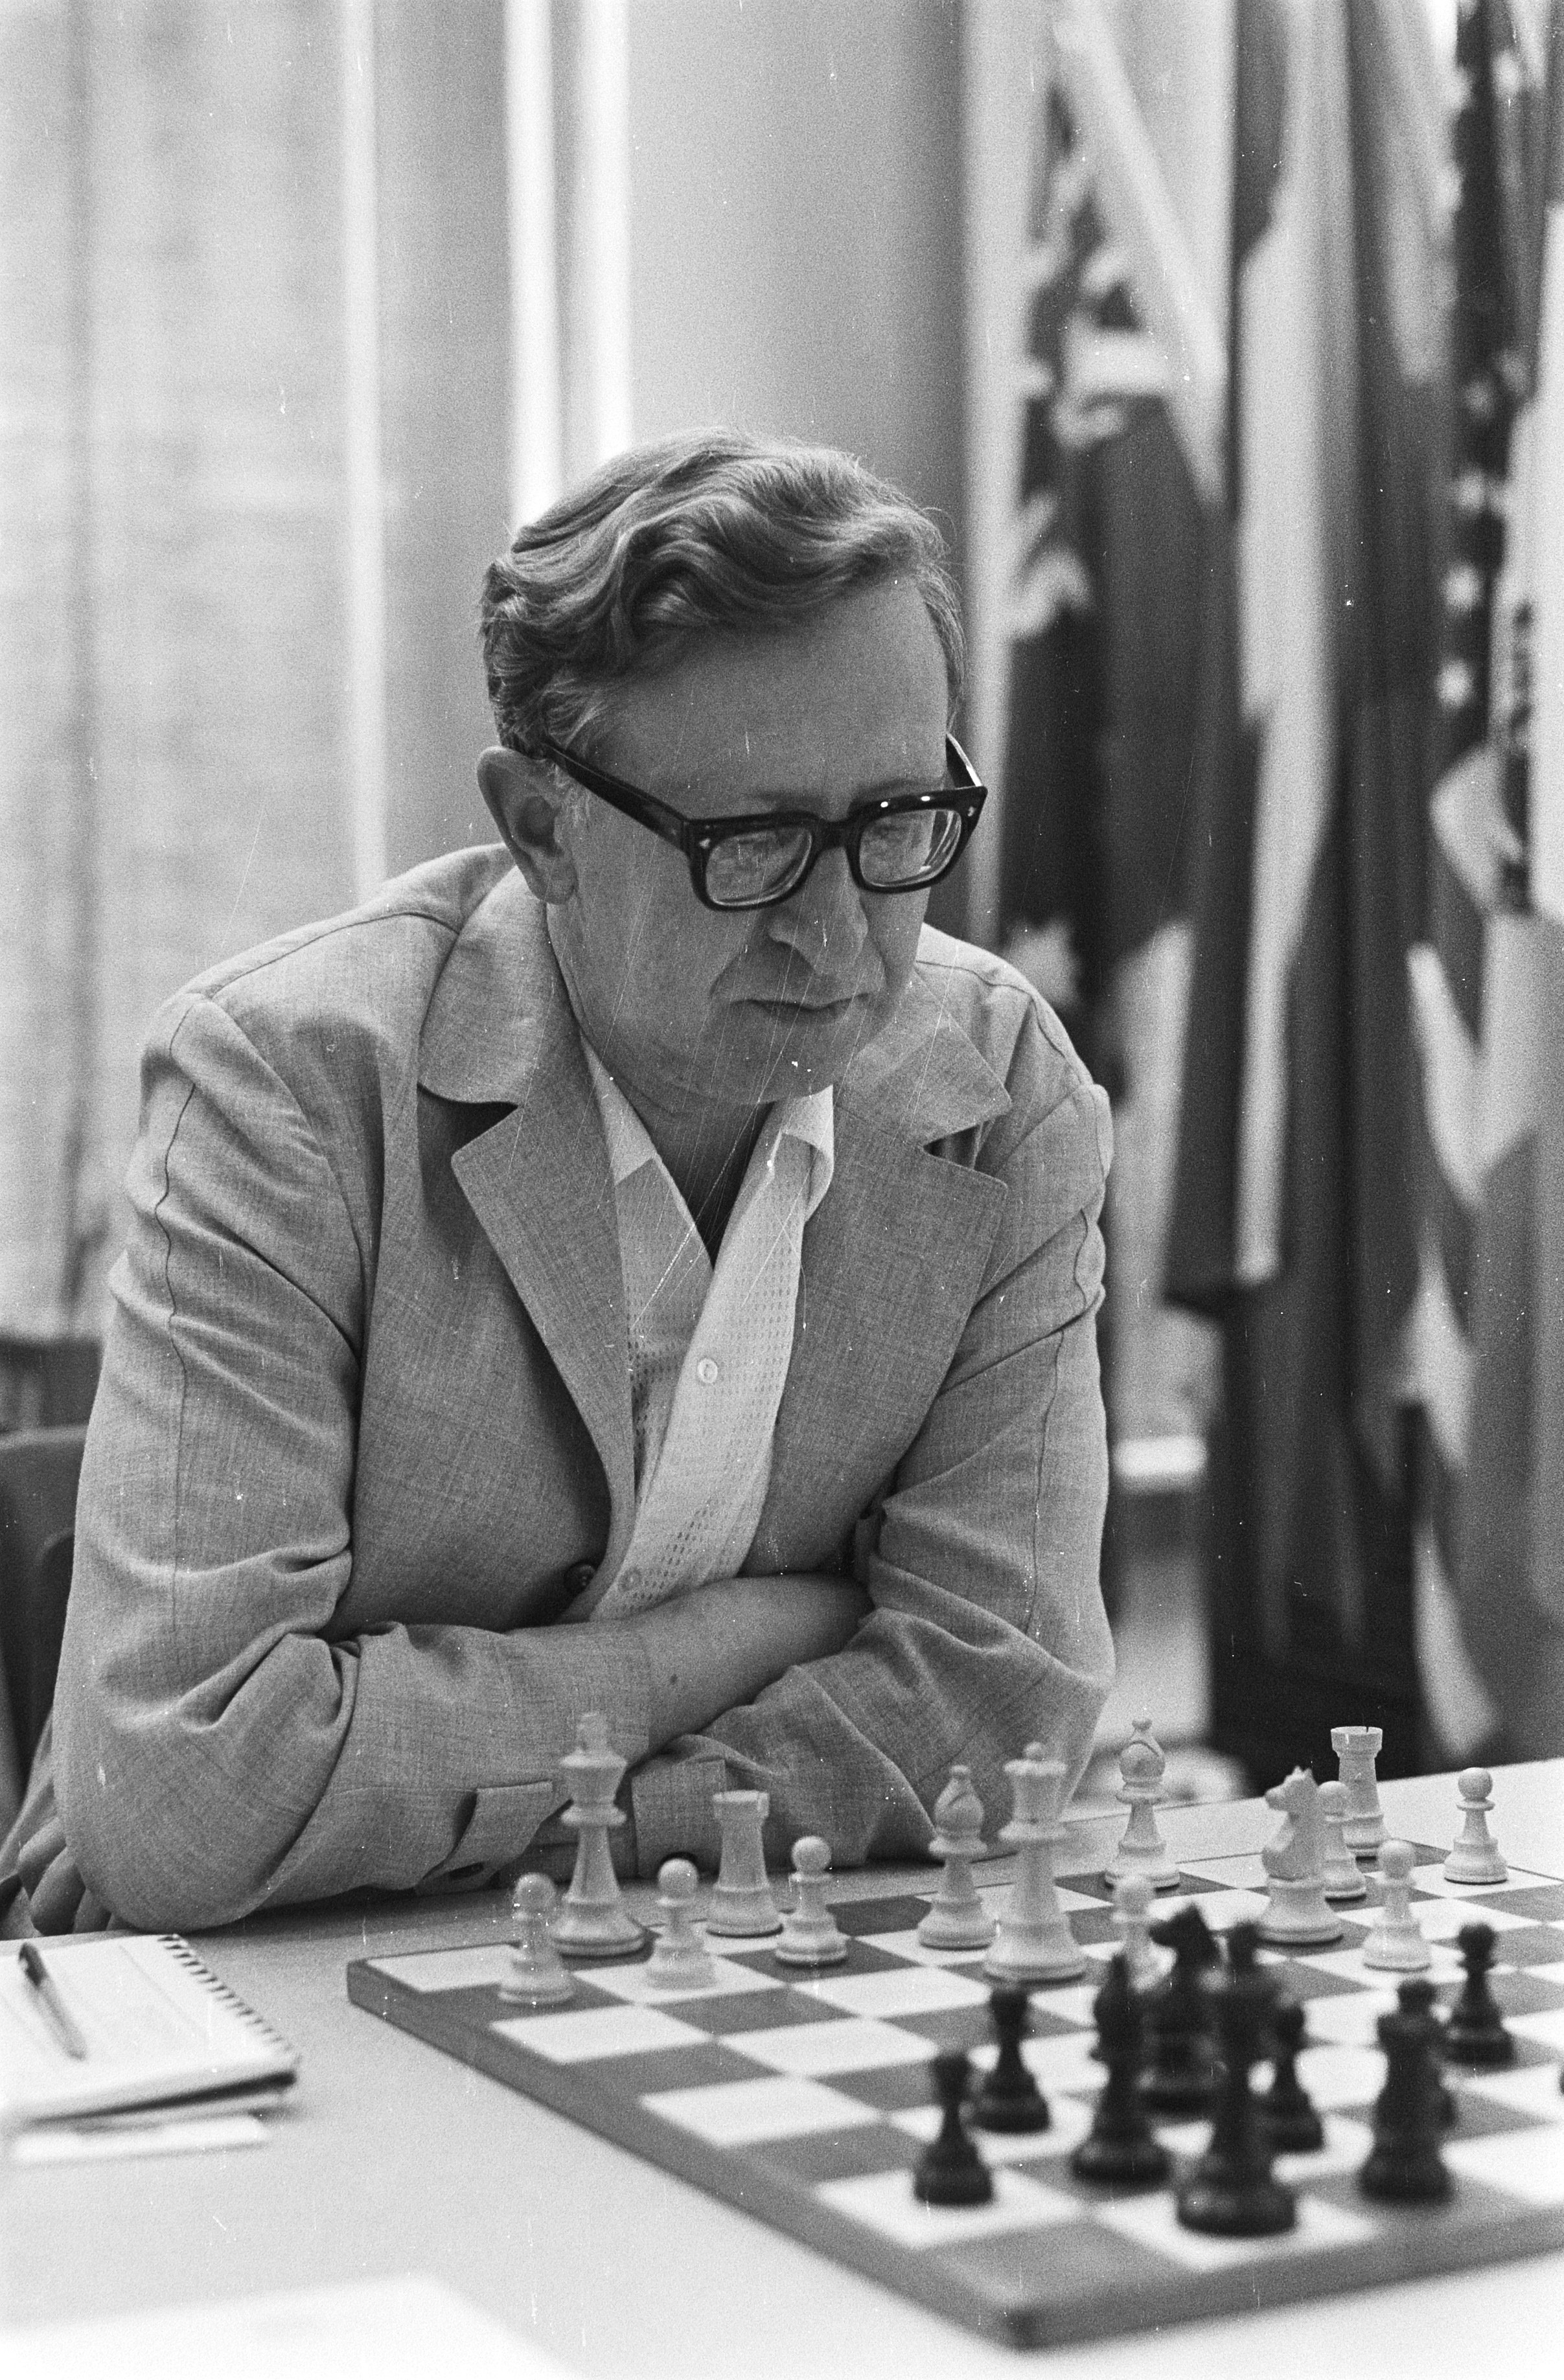 Vasily Smyslov Best Games - Chessentials